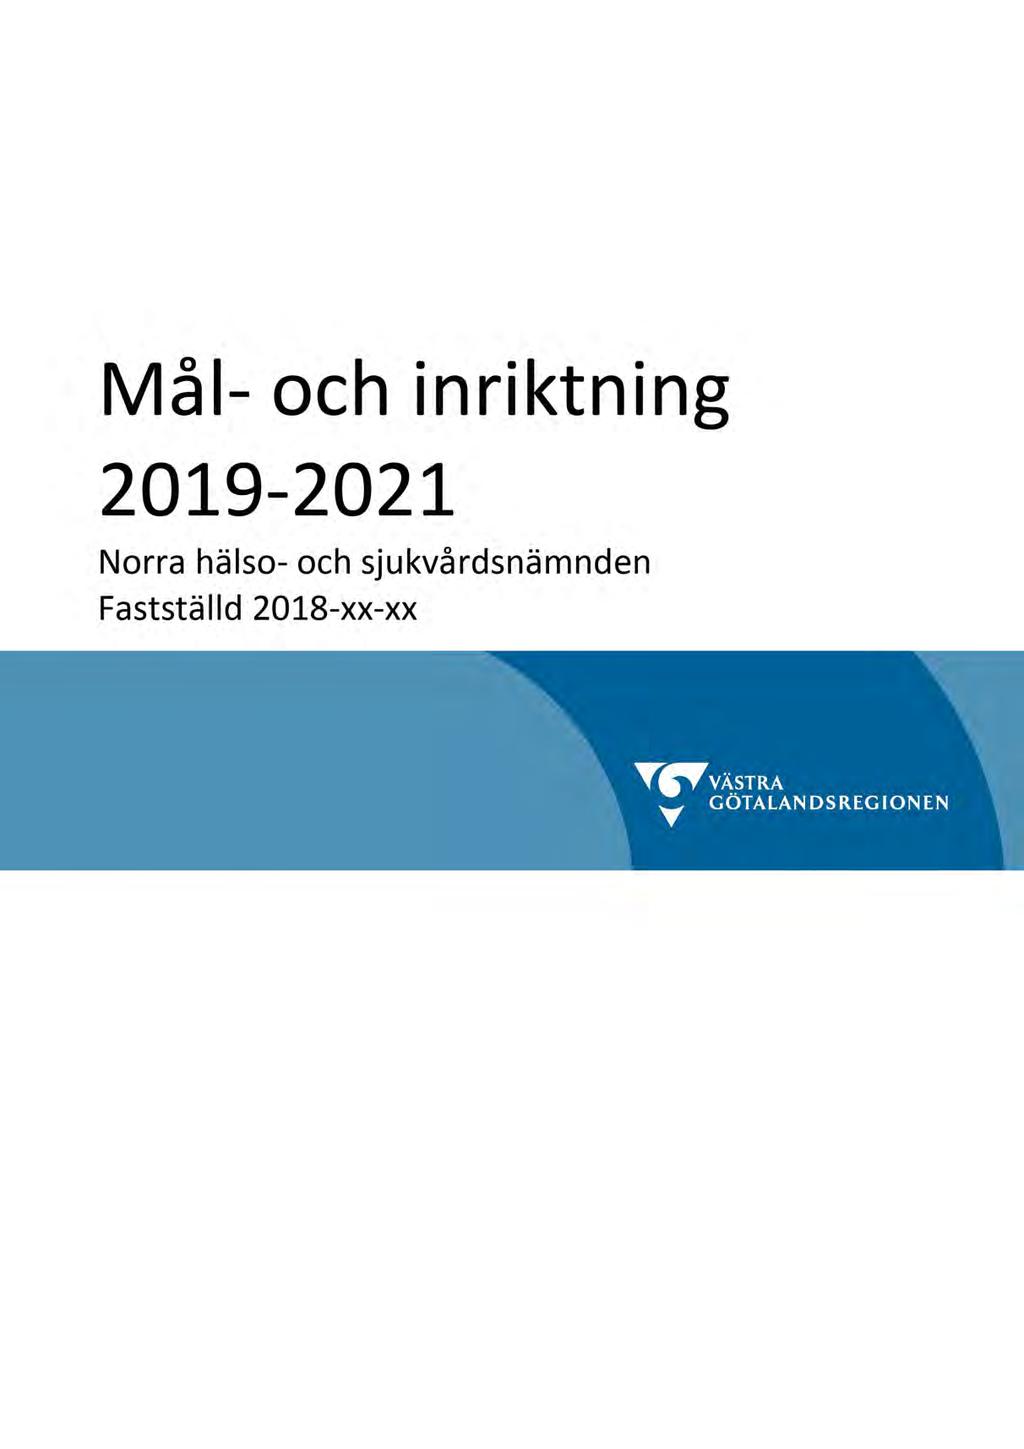 83 Mål och Inriktning 2019-2021 - HSNN 2015-00281-33 Mål och Inriktning 2019-2021 : mål och inriktning HSN N